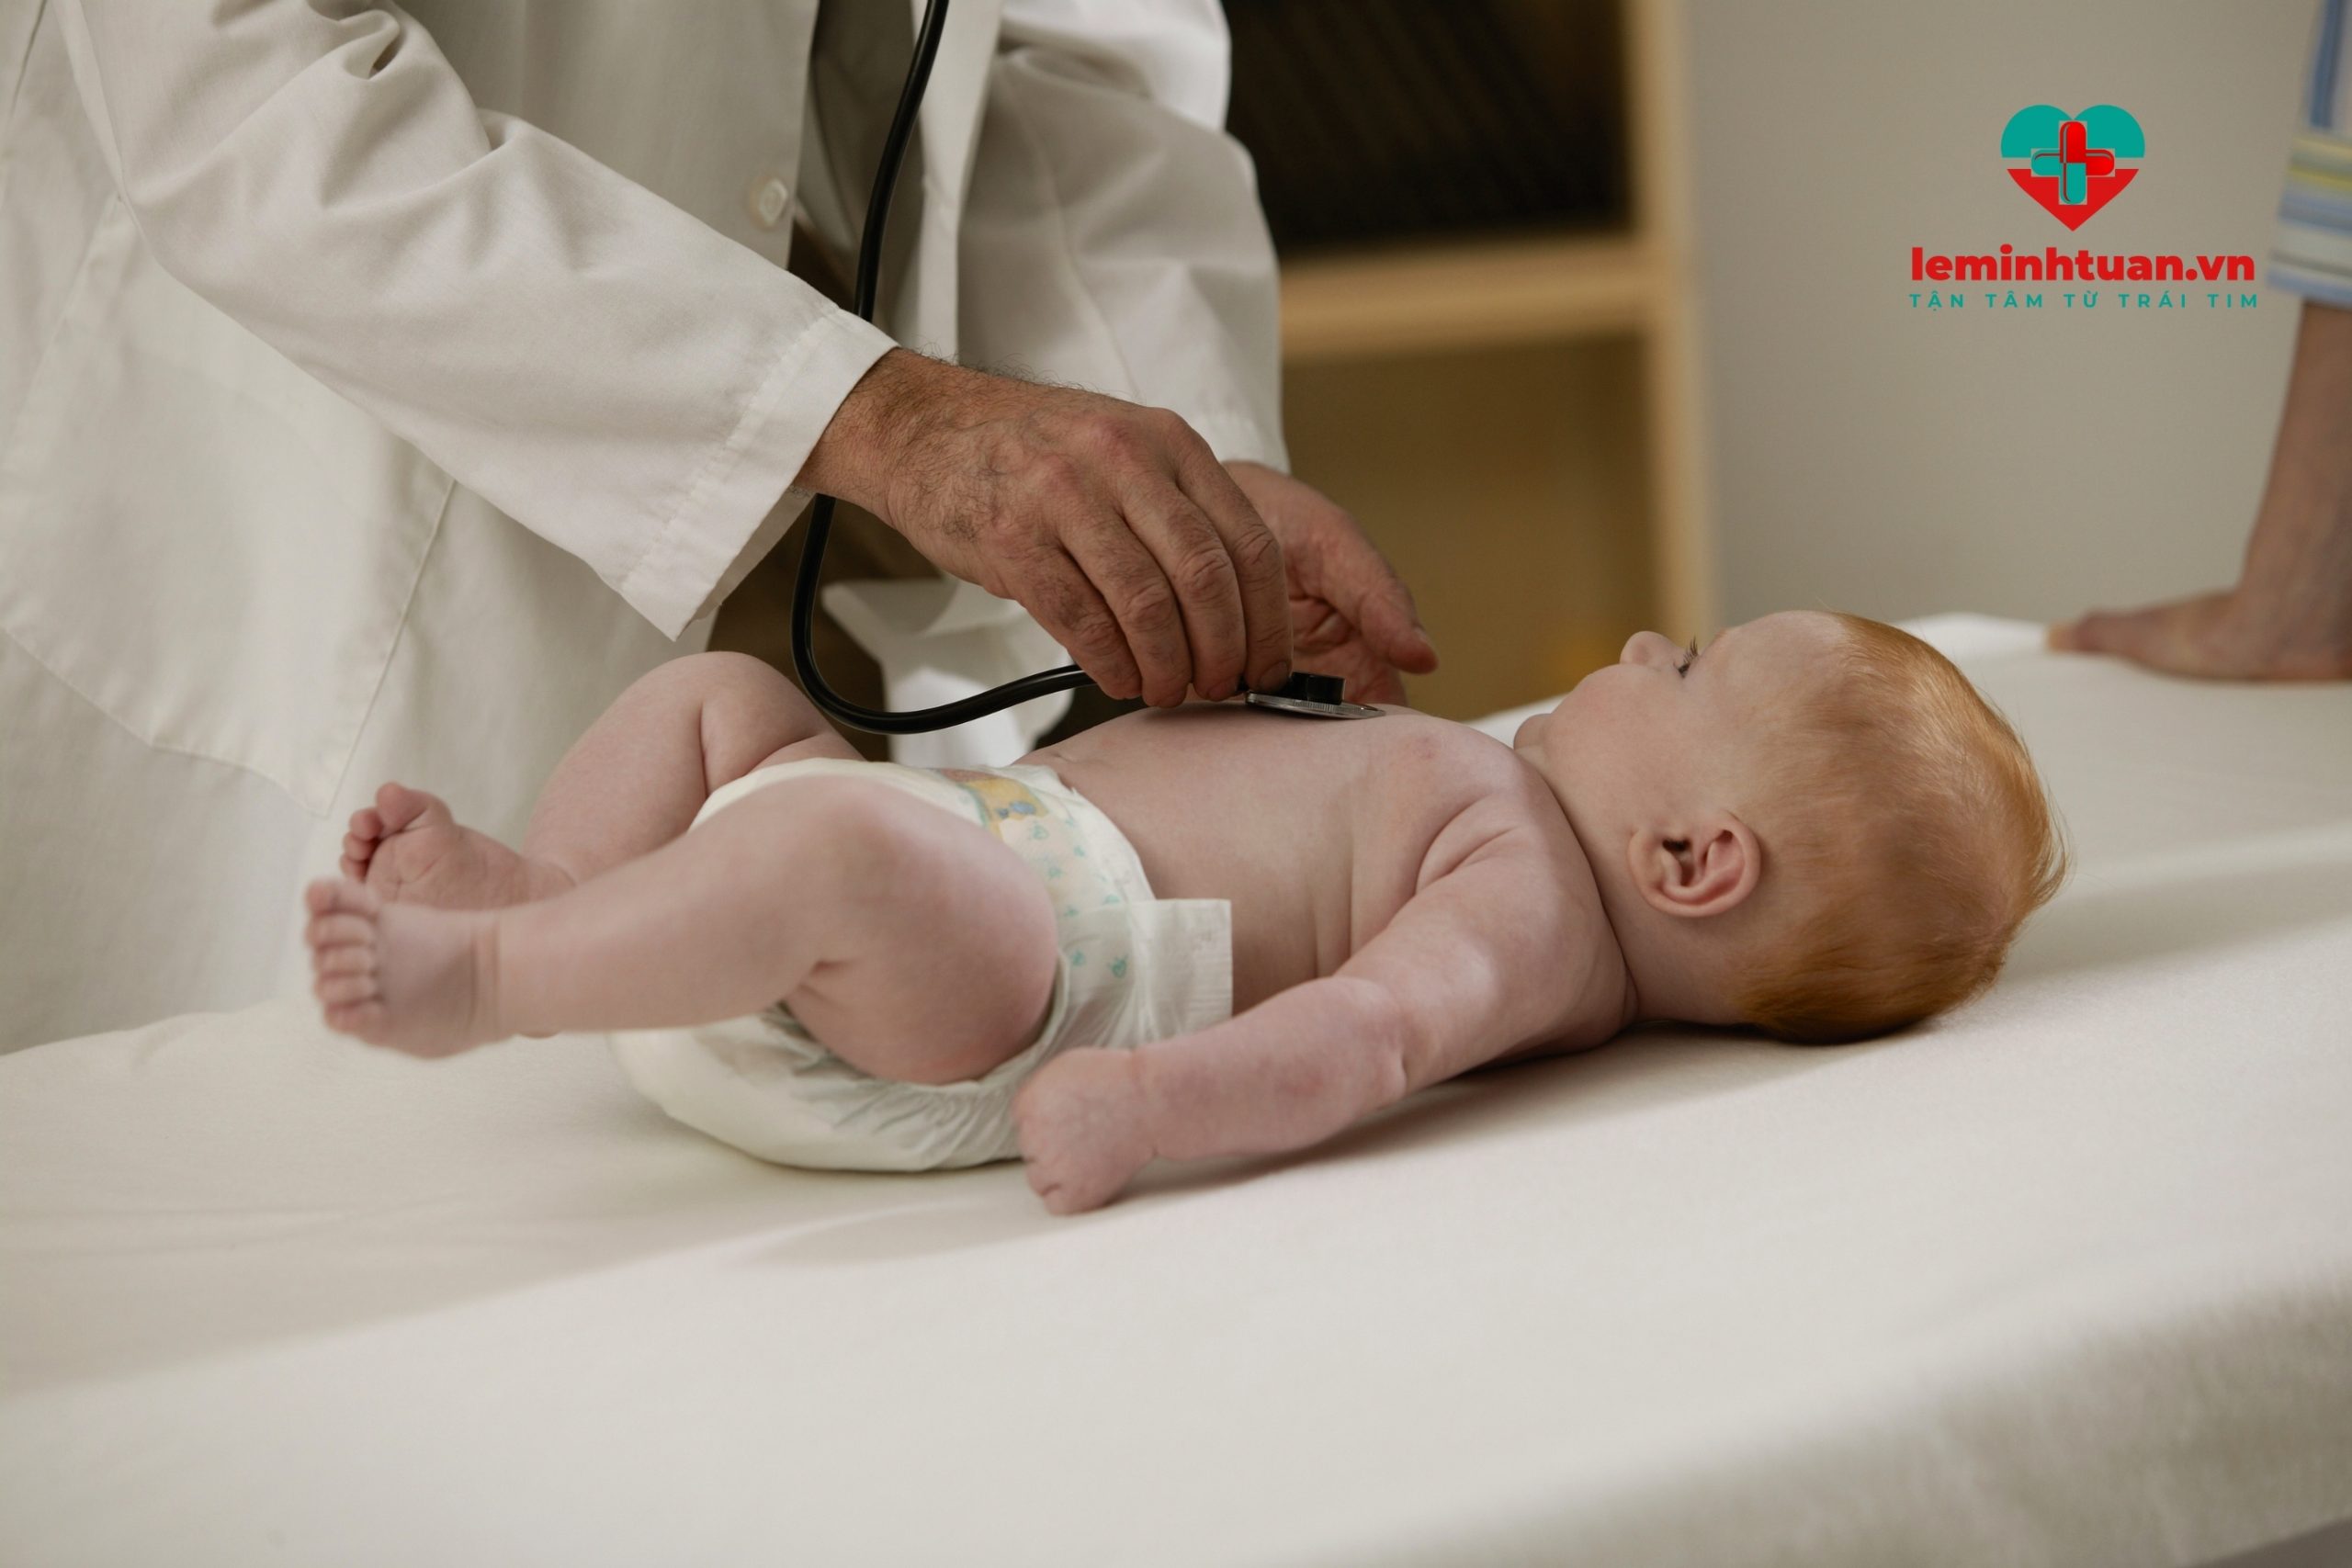 Đưa trẻ sơ sinh 1 tháng tuổi bị táo bón đi khám bác sĩ khi trẻ có dấu hiệu trở nặng